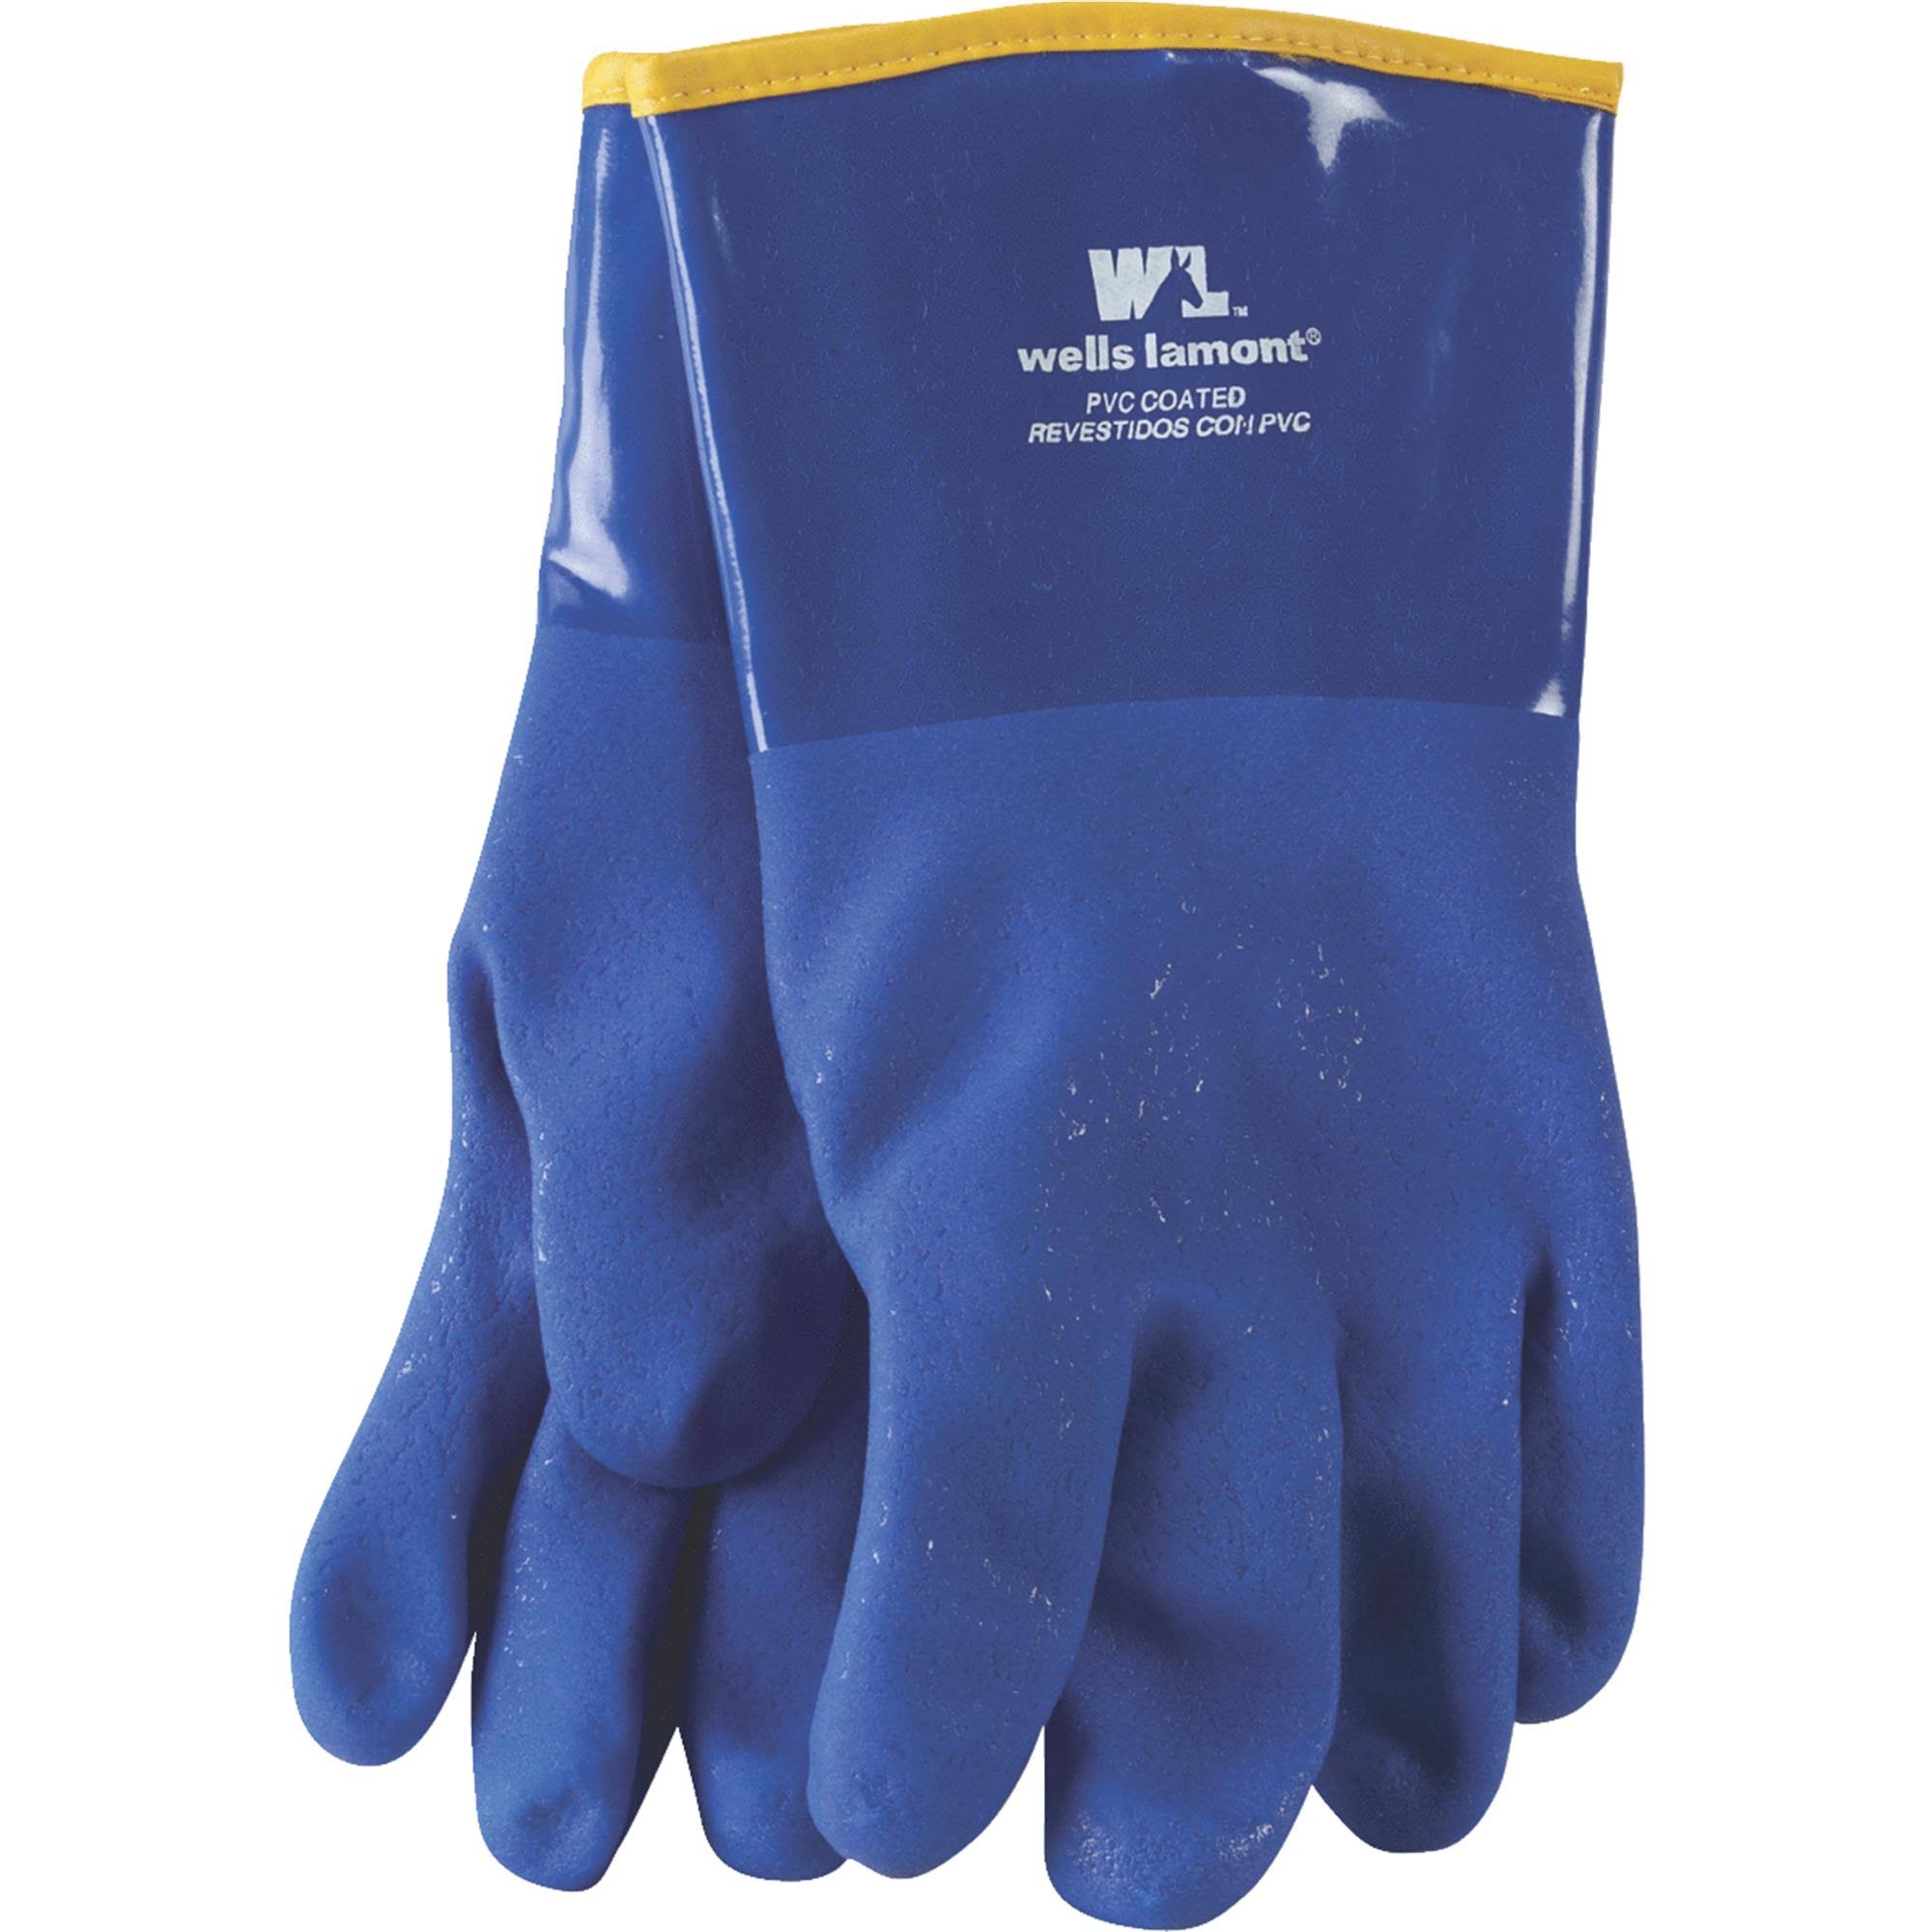 Wells Lamont Heavy Duty PVC Coated Work Gloves - Blue